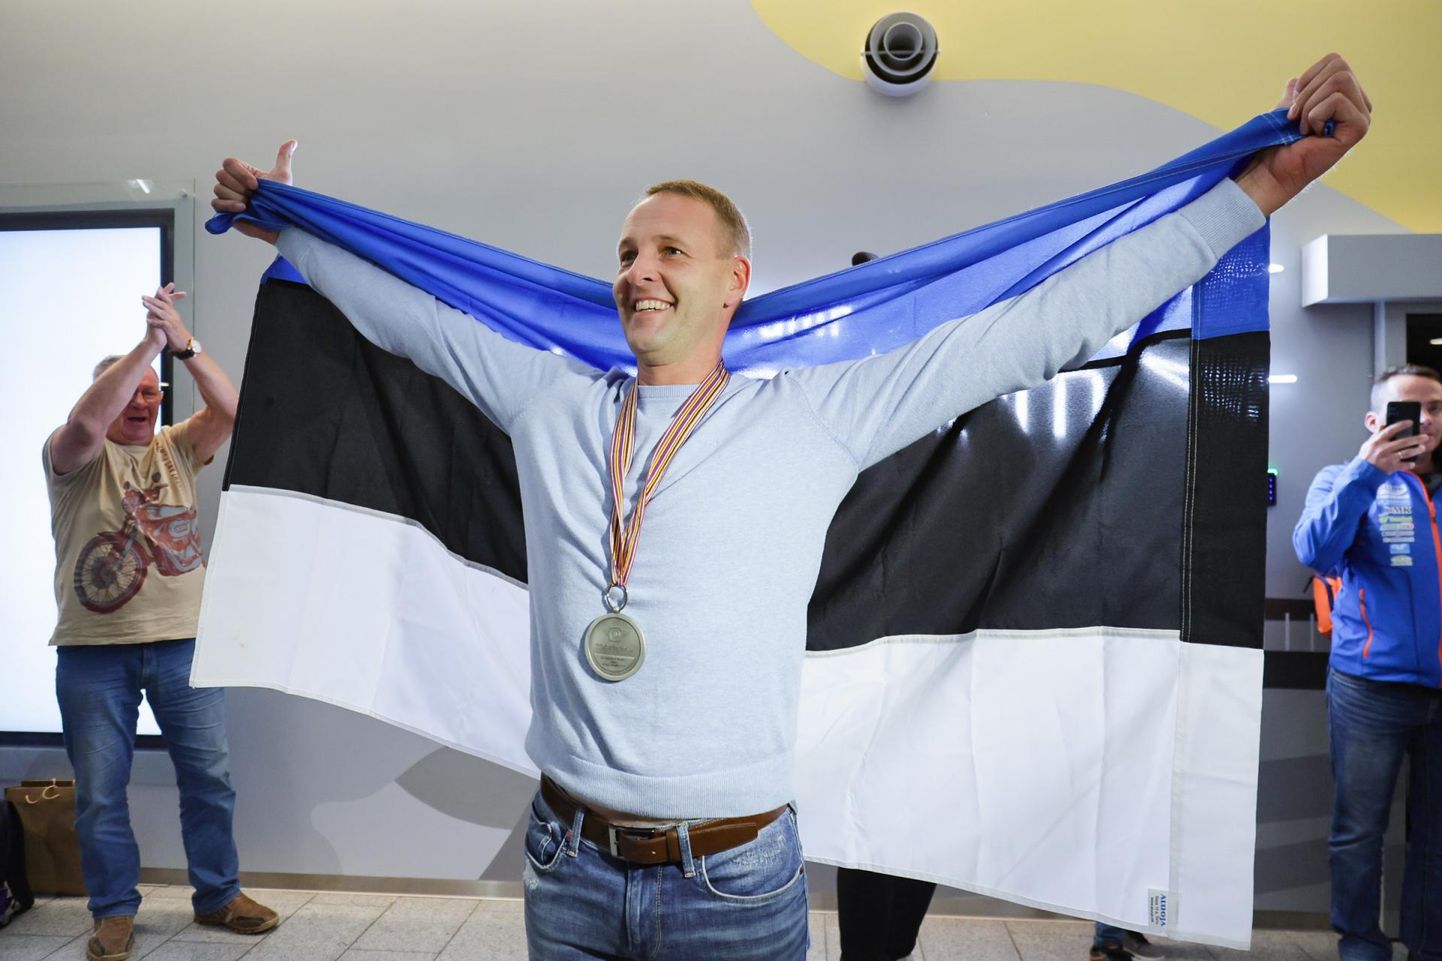 Viljandimaa spordiliit valis parimaks meessportlaseks Kert Variku, kes tõi koos Lari Kunnasega külgkorviga mootorrataste krossi maailmameistrivõistlustelt hõbemedali. Ühtlasi on Varik omal alal kümnekordne Eesti meister.